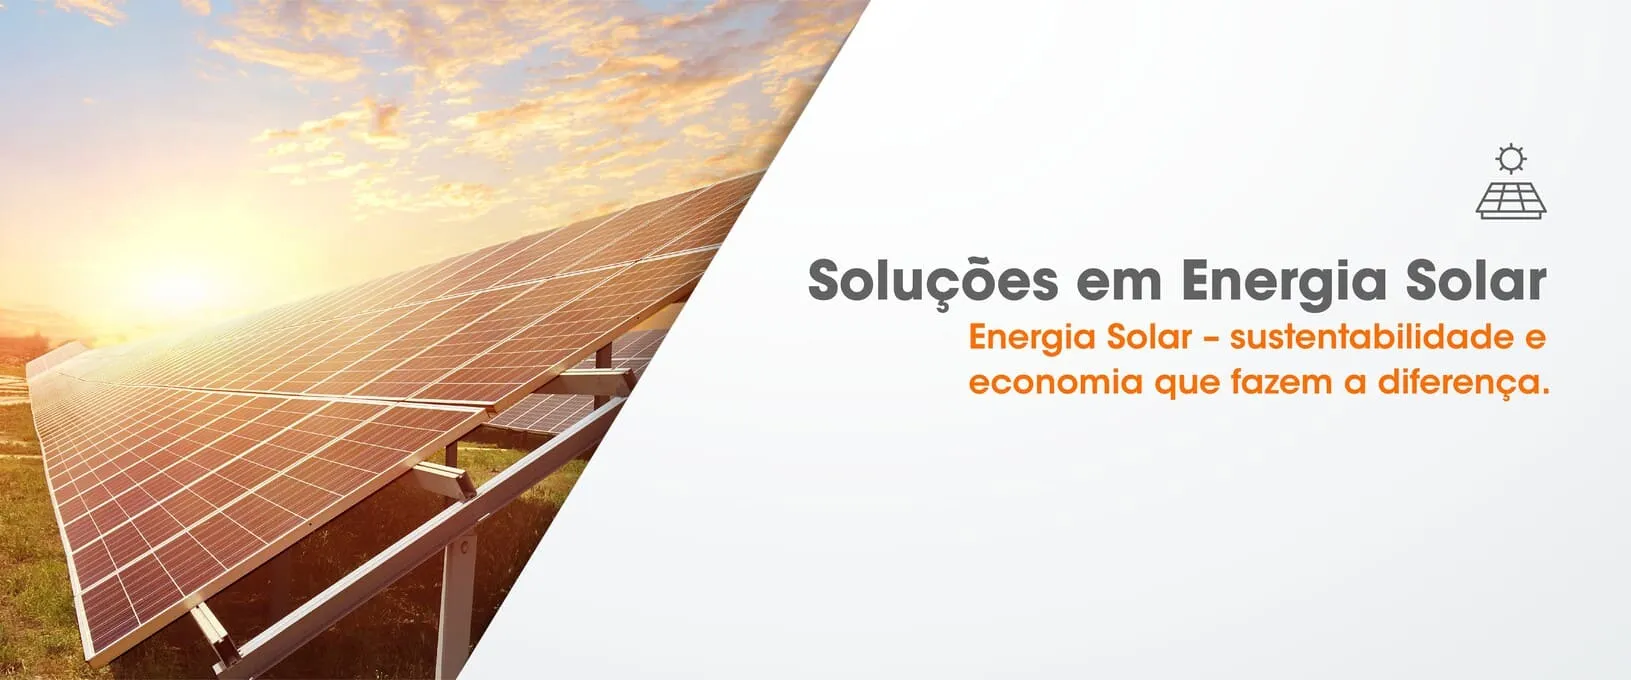 Soluções em energia solar